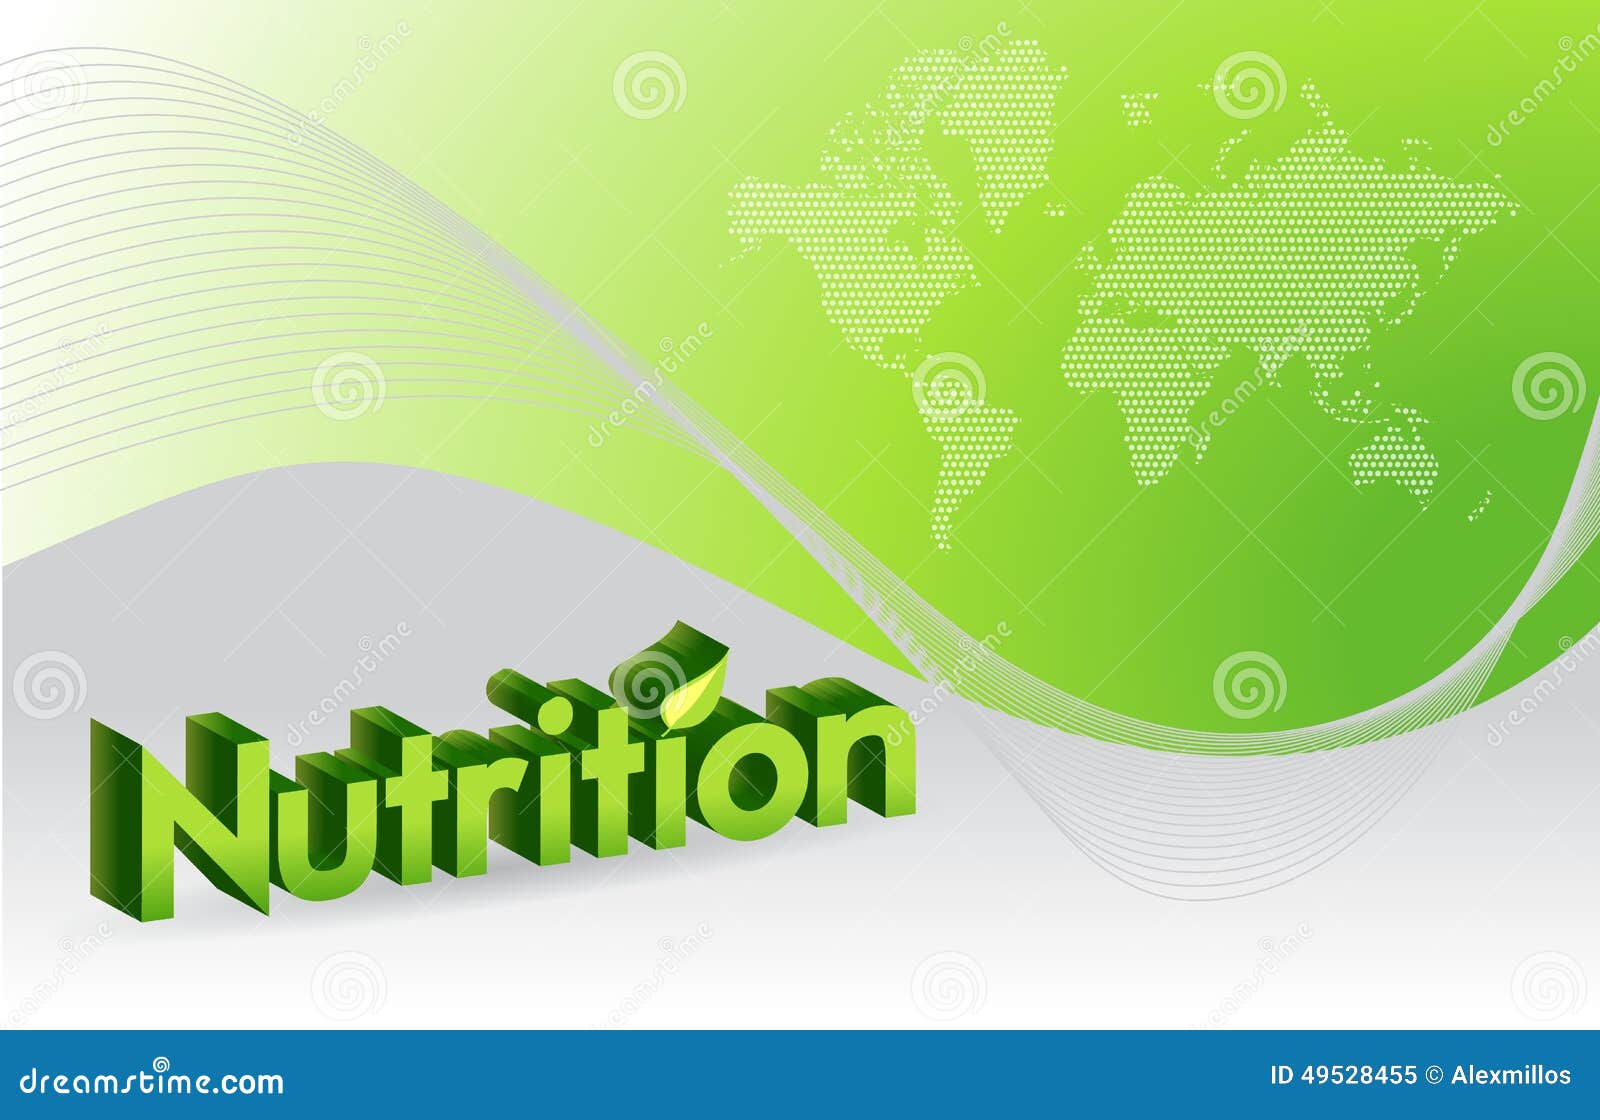 Tải miễn phí Nutrition month background design để tôn vinh ngành dinh dưỡng